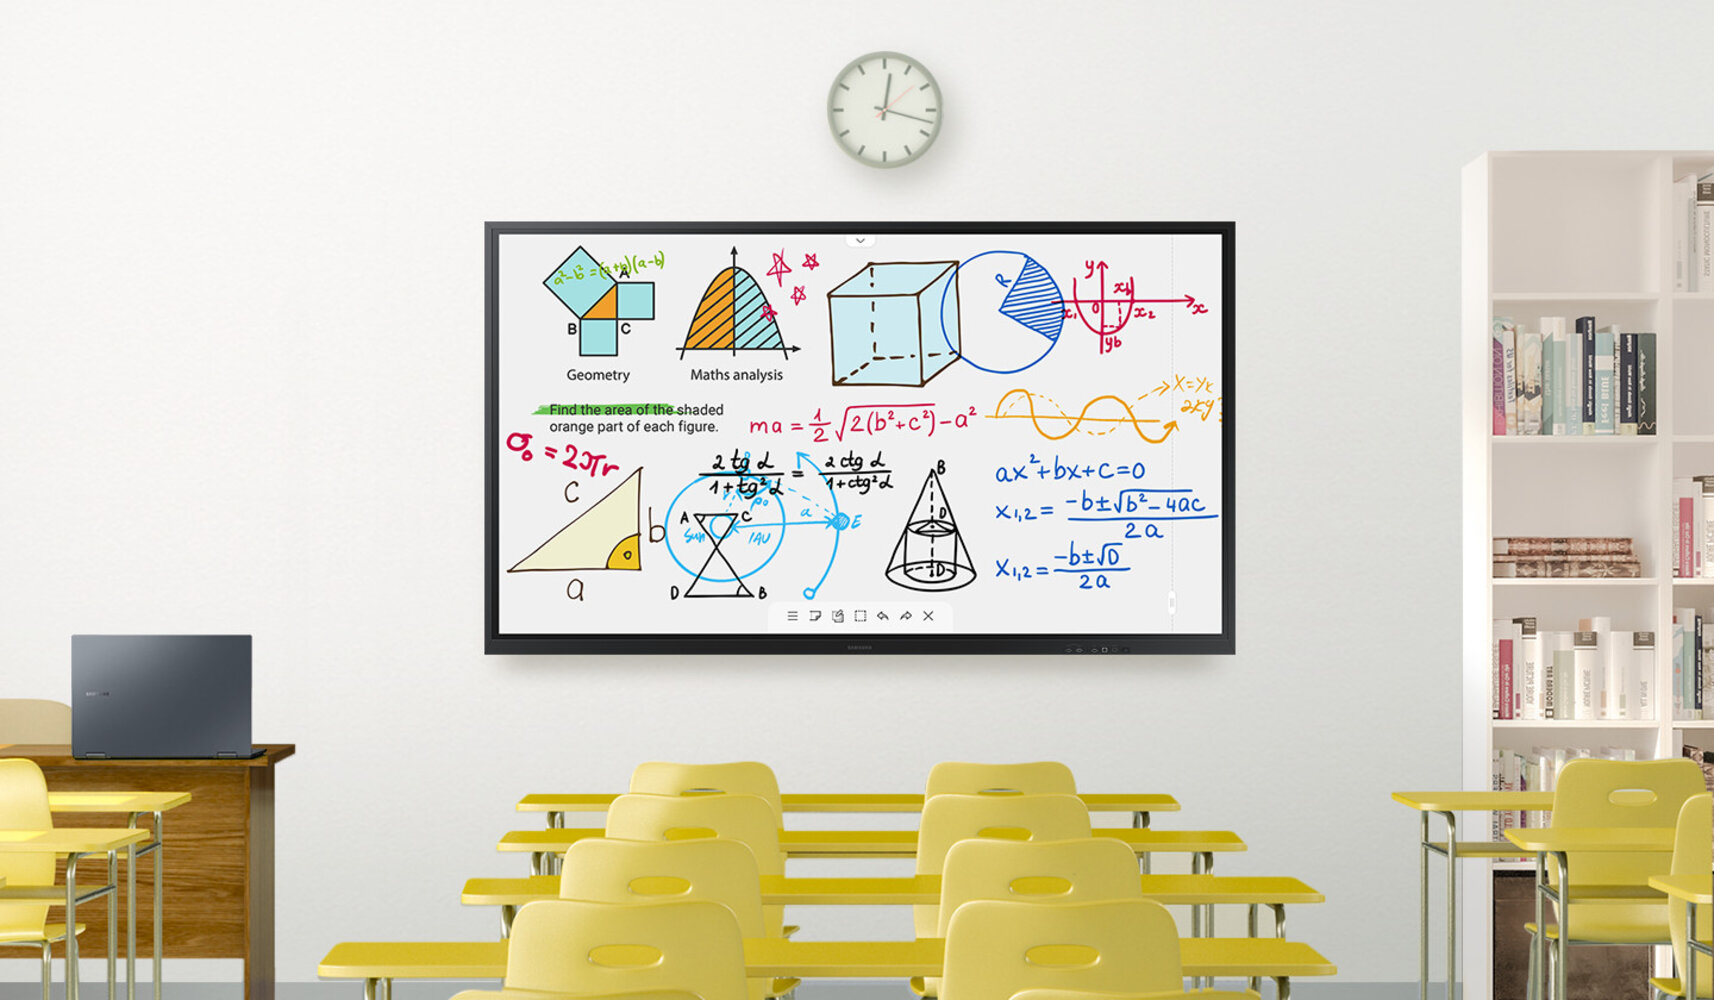 Ein leeres Klassenzimmer mit einem Samsung Flip 3 an der Wand, darüber befindet sich eine Uhr. Auf dem Whiteboard werden mathematische Formeln angezeigt. 